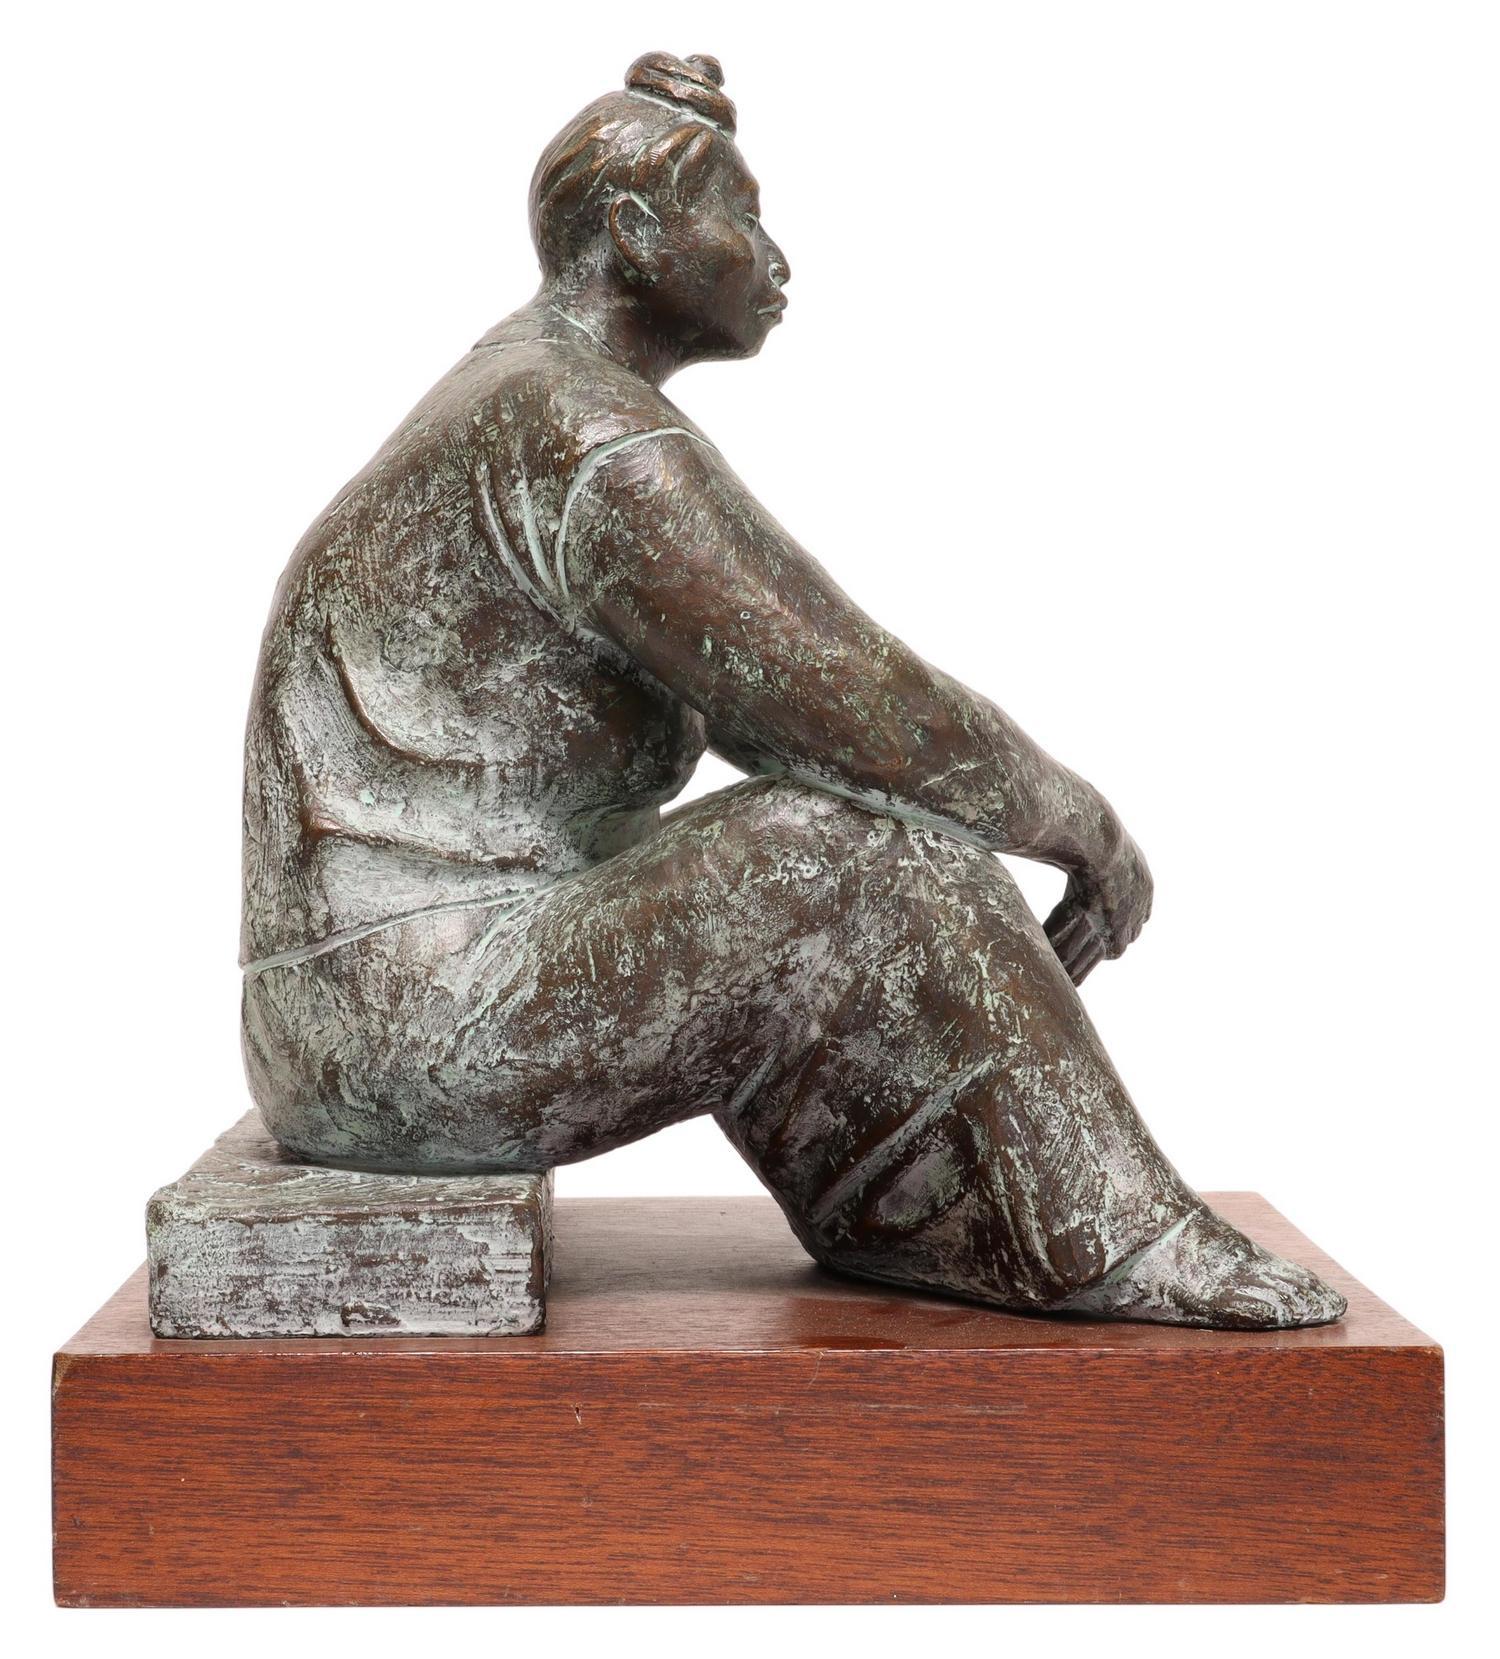 Martha de Tehuana en un Banco (Martha On The Bench)
Bronzeskulptur, signiert, Original-Galerie Label Auflage 1/11
Der Bildhauer Armando Amaya wurde 1935 in Mexiko-Stadt geboren. Er studierte an der Nationalen Schule für Malerei und Bildhauerei bei